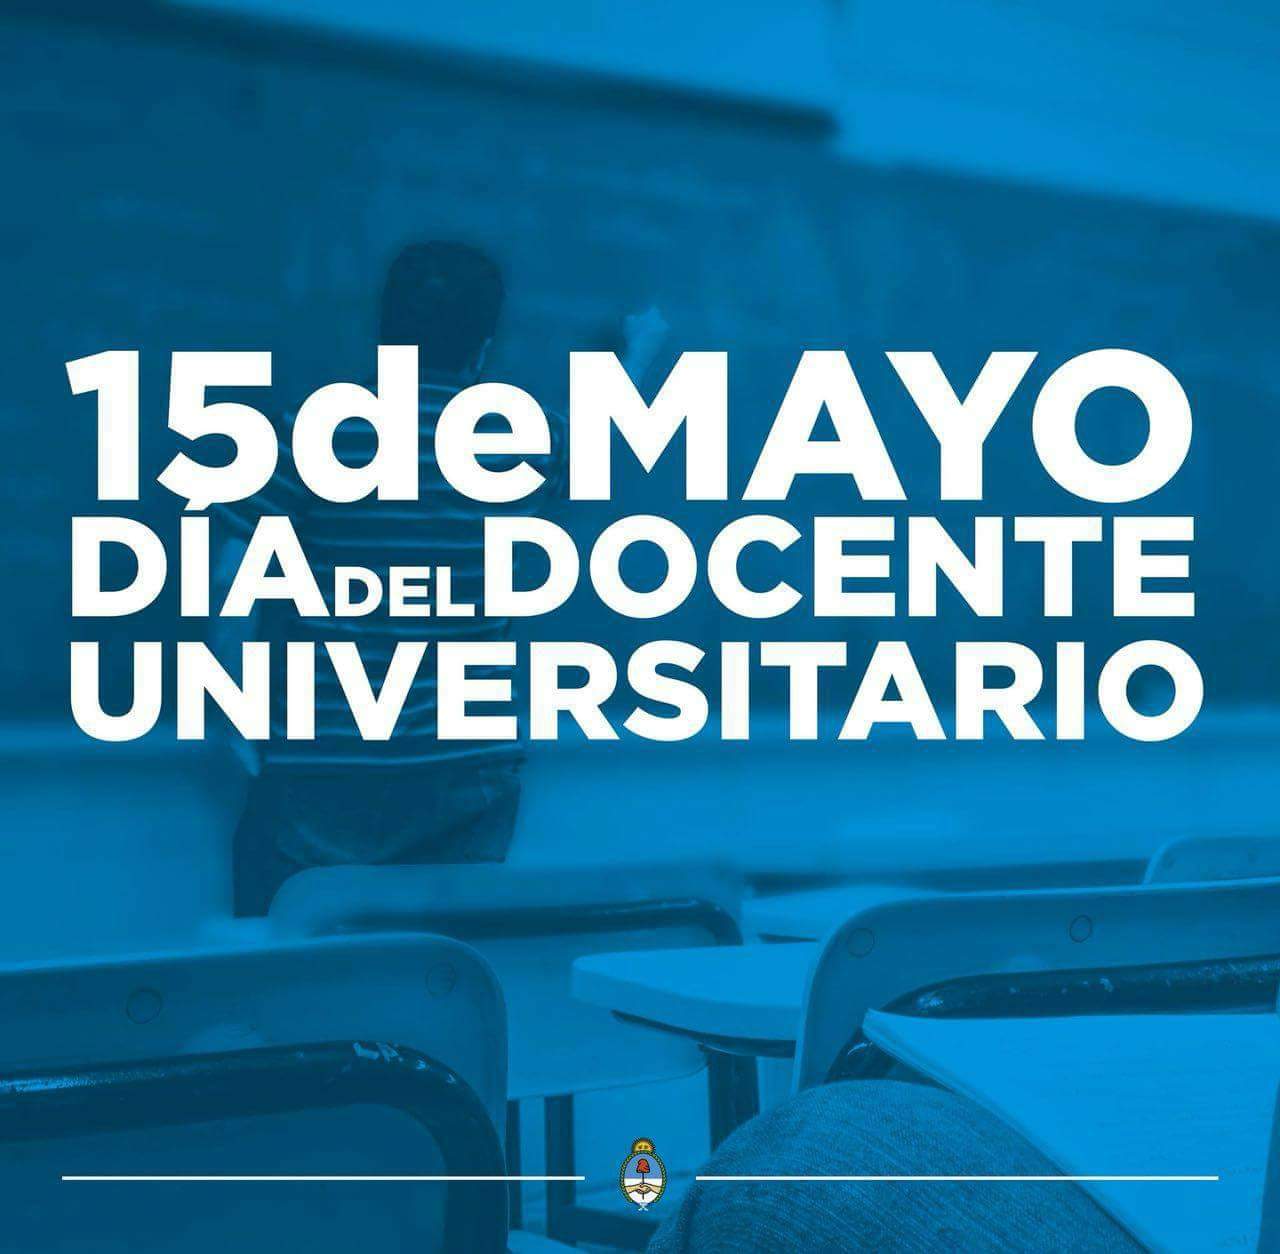 15 de mayo Dia Docente Universitario